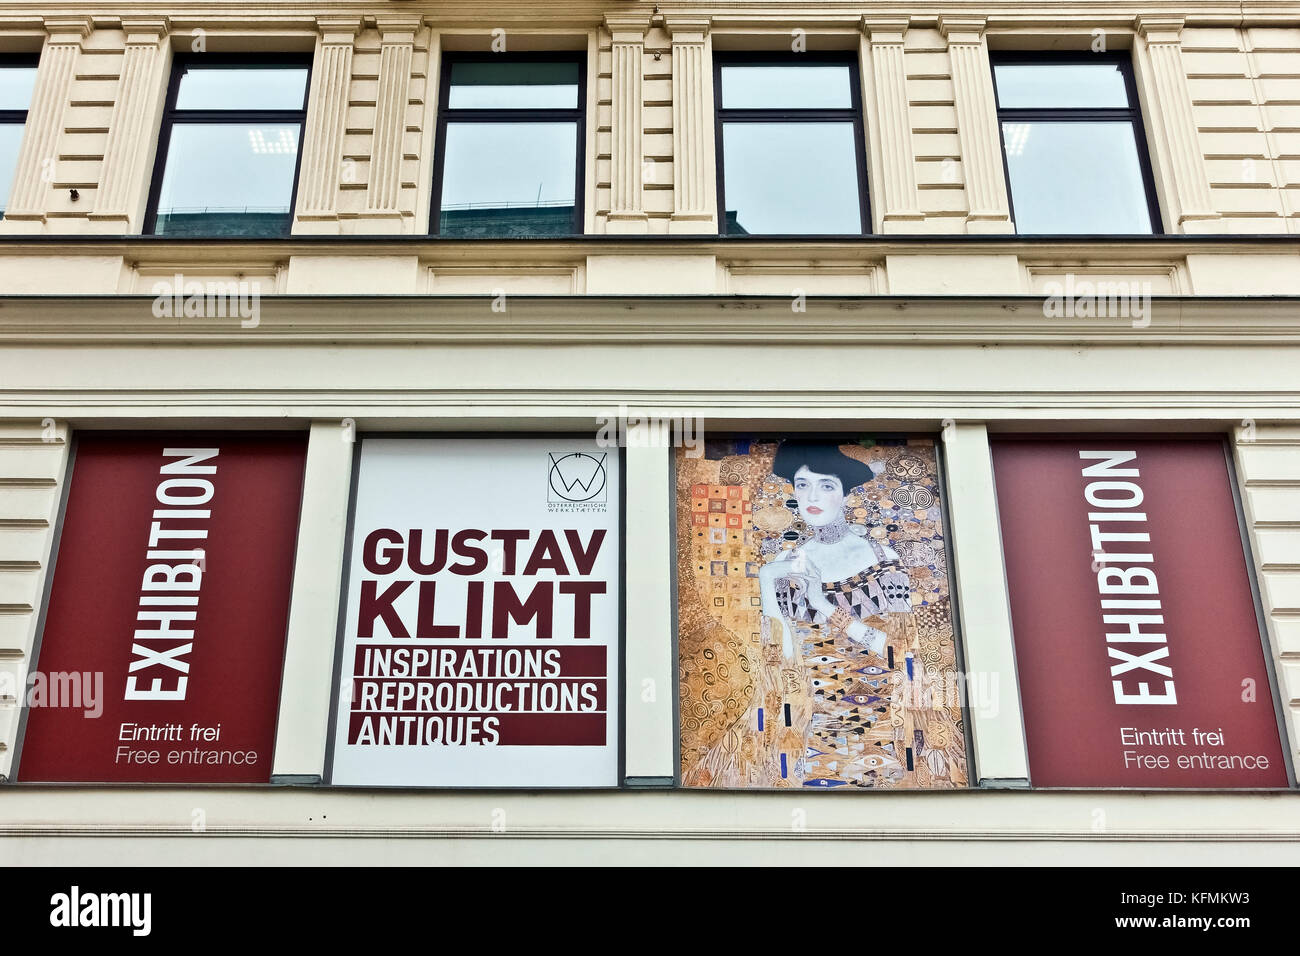 Tienda de recuerdos, compras, exposición de reproducciones Gustav Klimt en Kärntner Str. Viena, Viena, Viena, Austria, Europa, Unión Europea, UE. Foto de stock